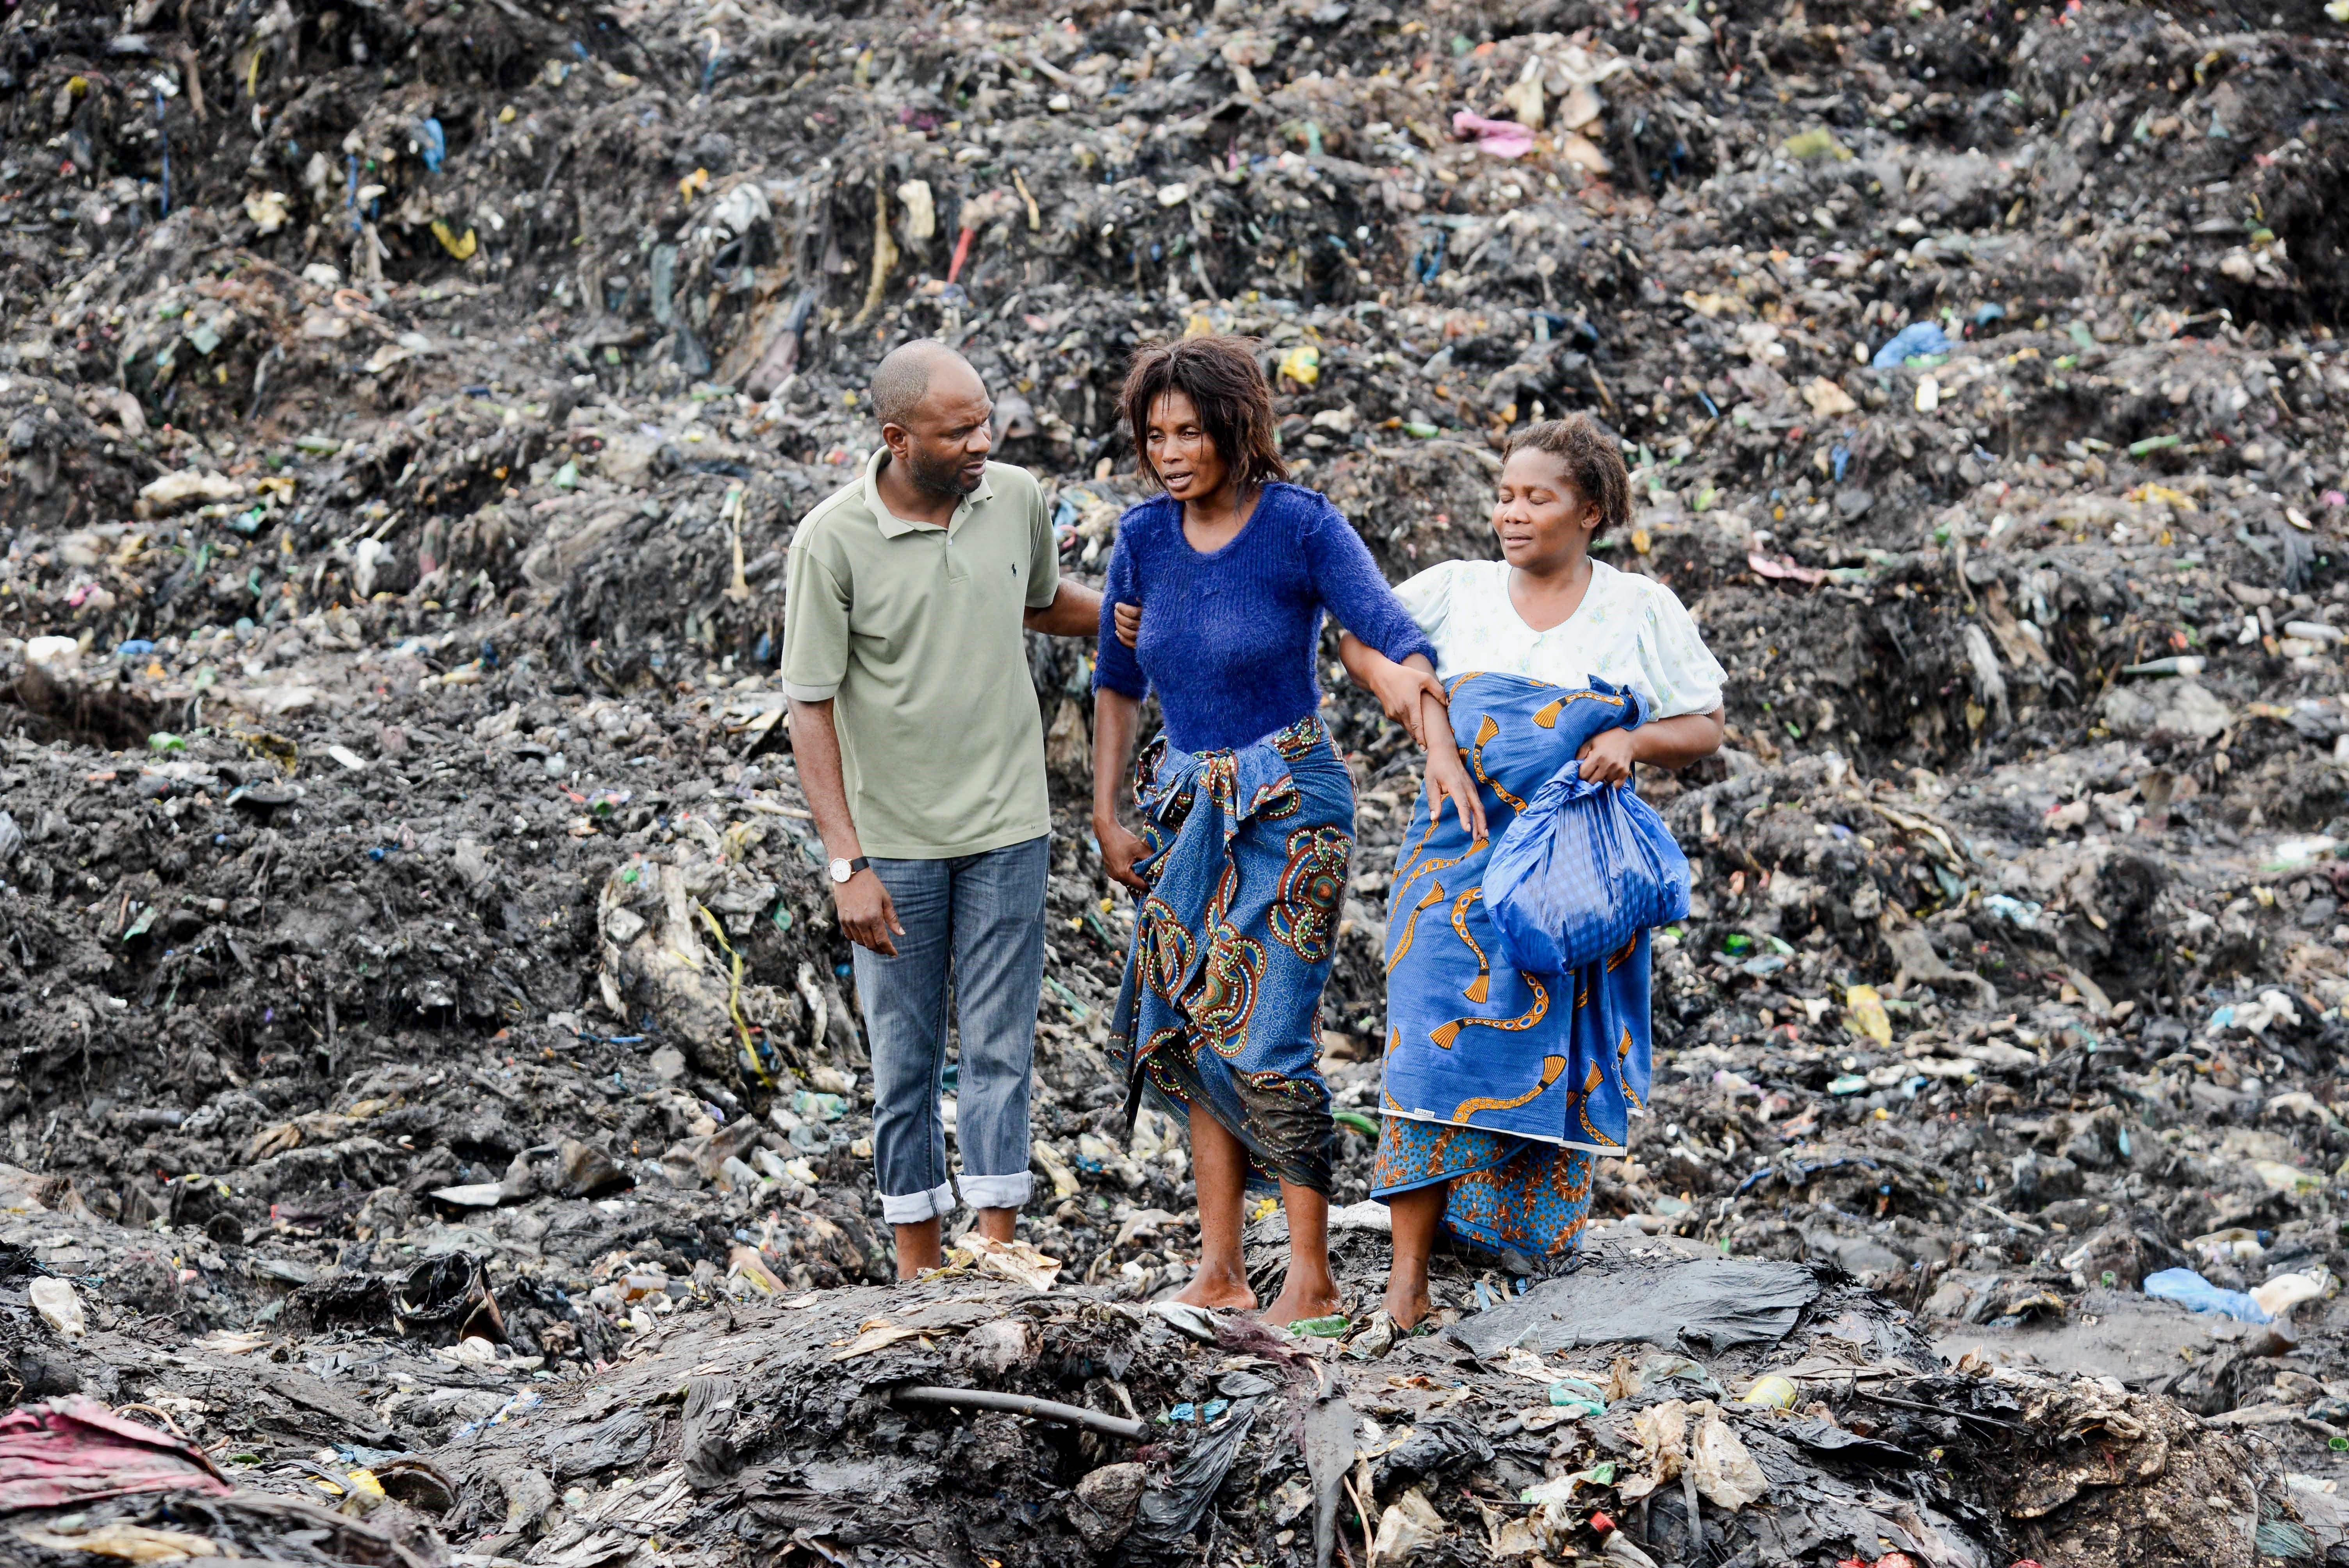 Moren 17 persones a Moçambic sepultades per una allau d'escombraries